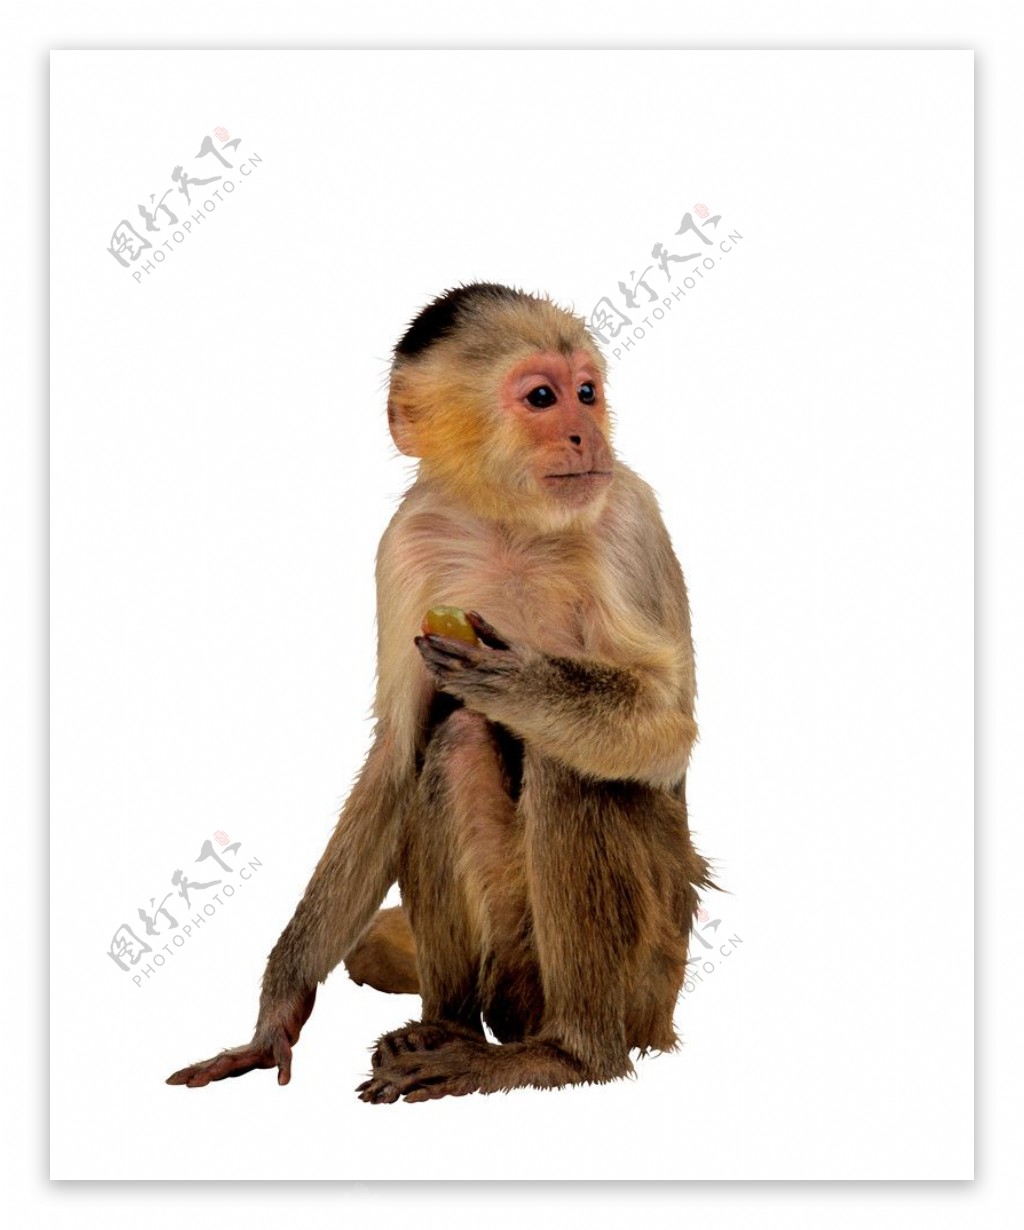 猿科动物图片